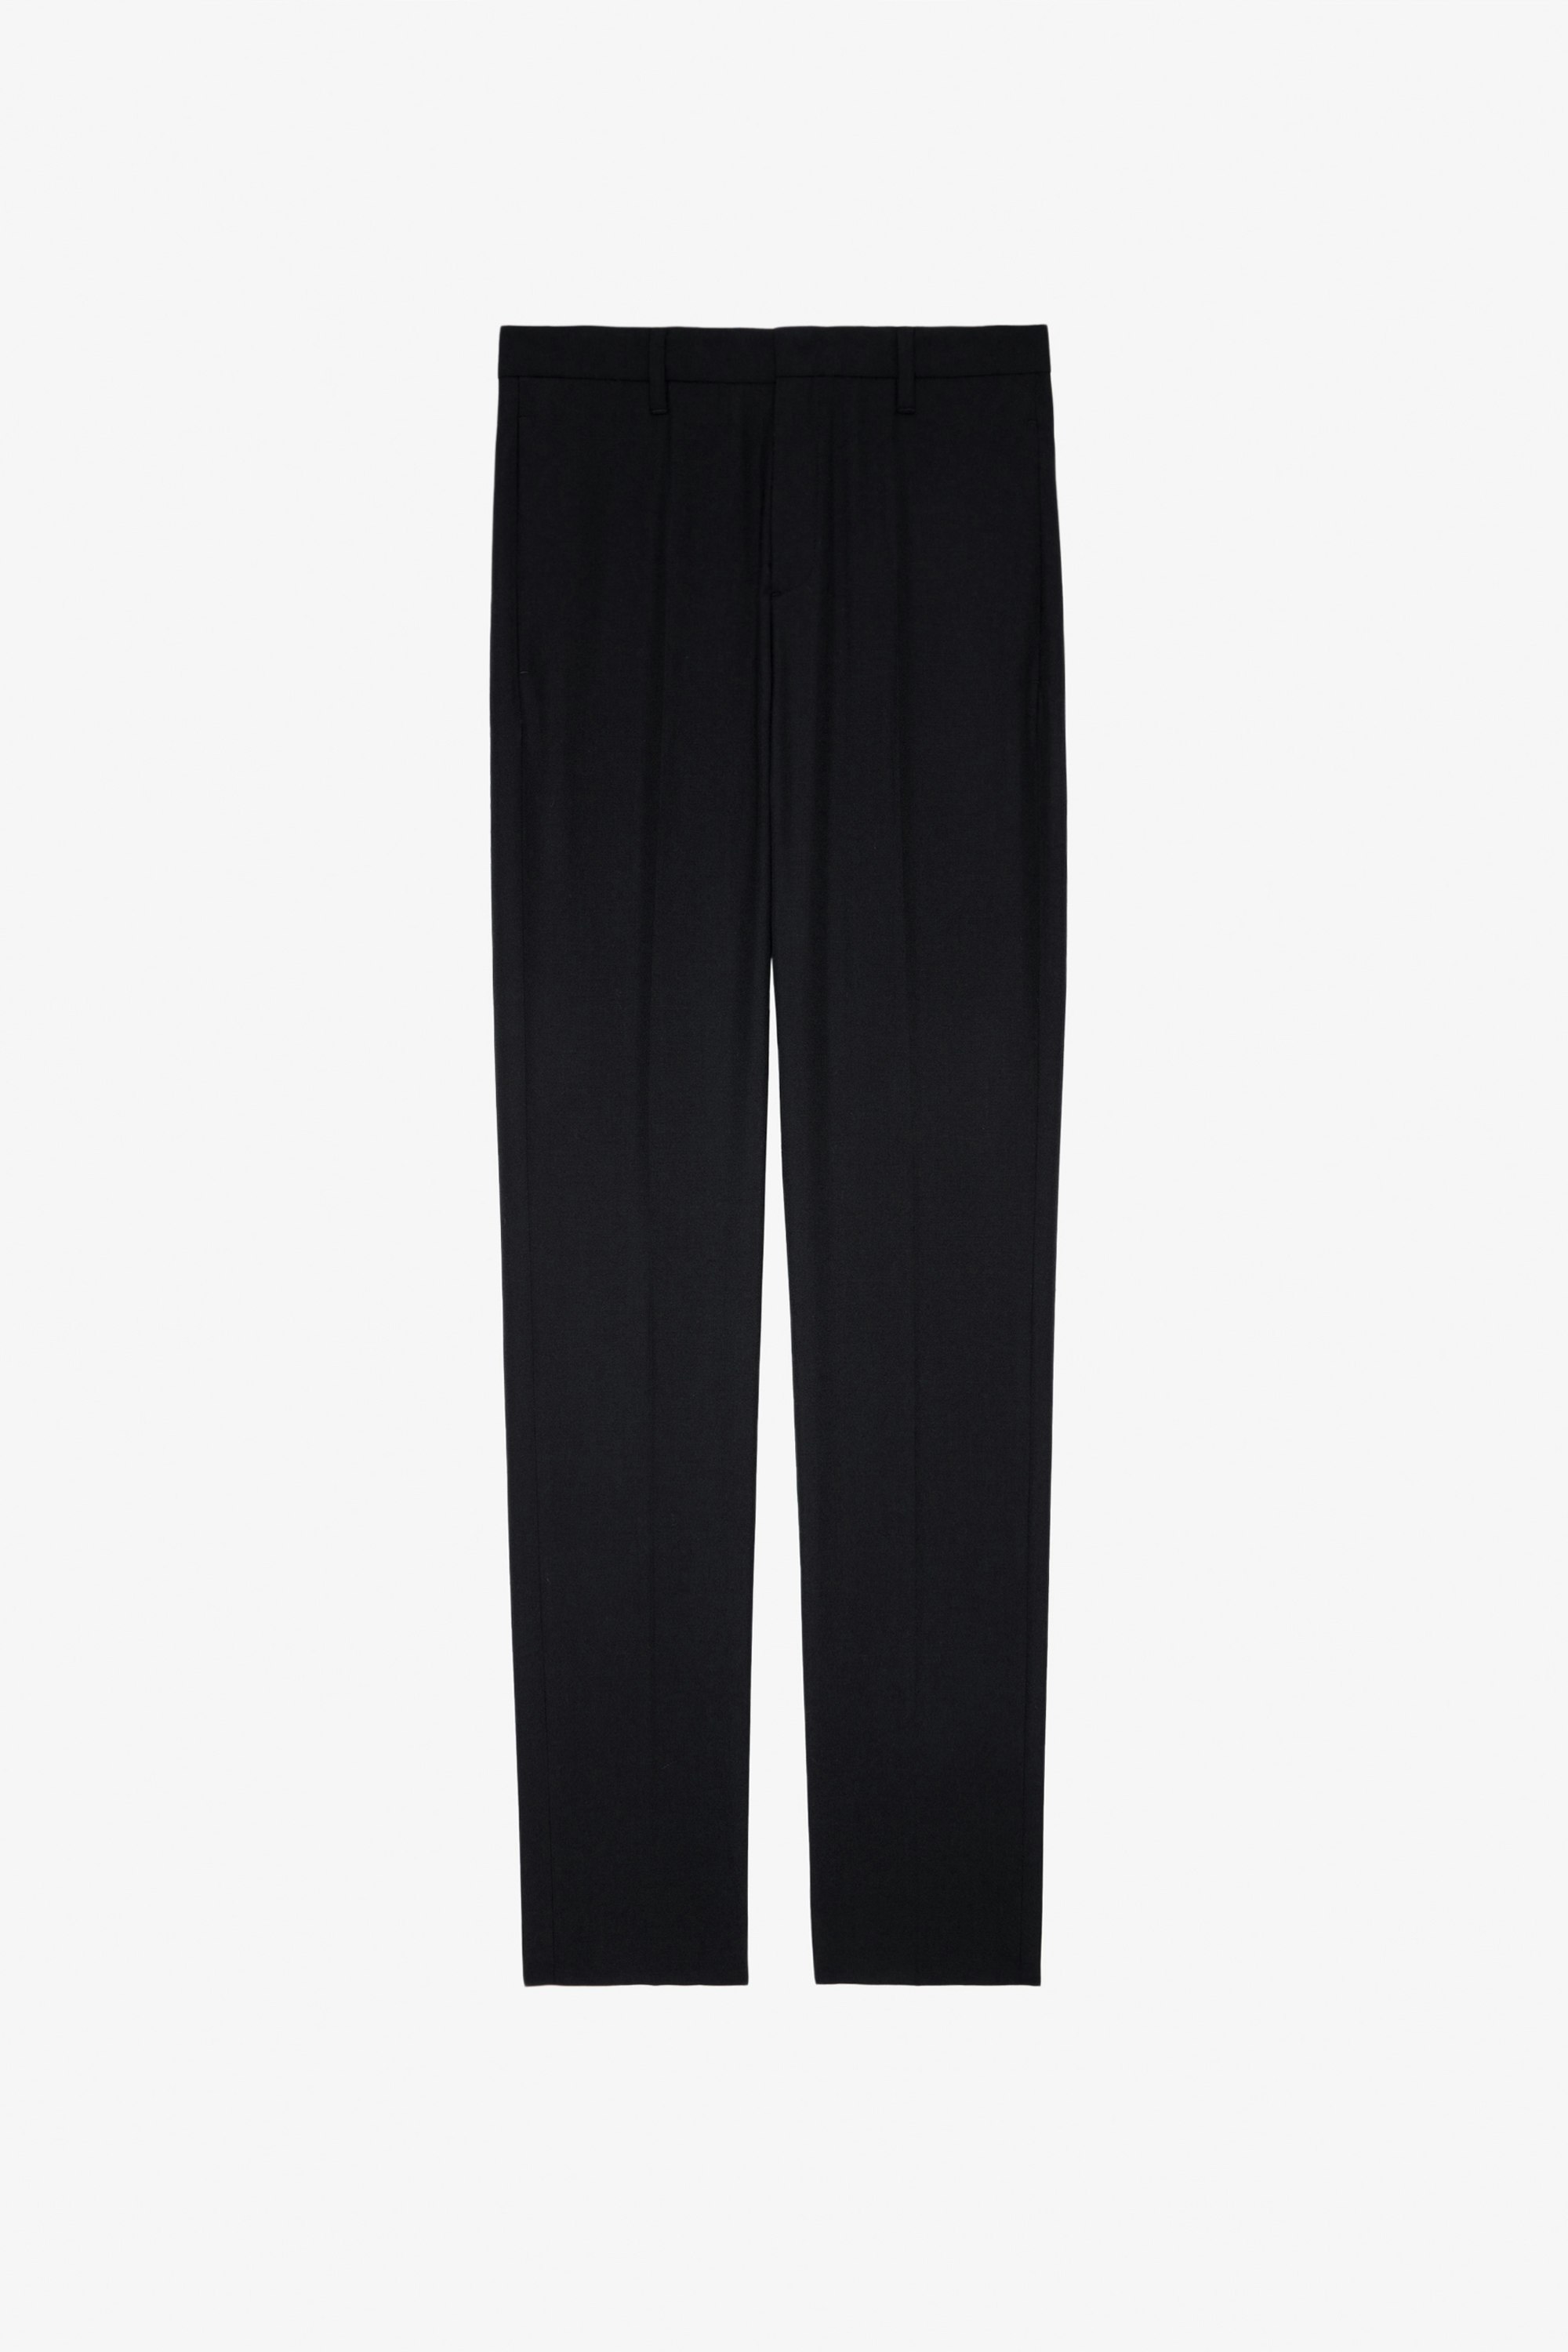 Pantalón Paris - Pantalón de traje unisex de lana en color negro con insignia del estudio en la espalda.